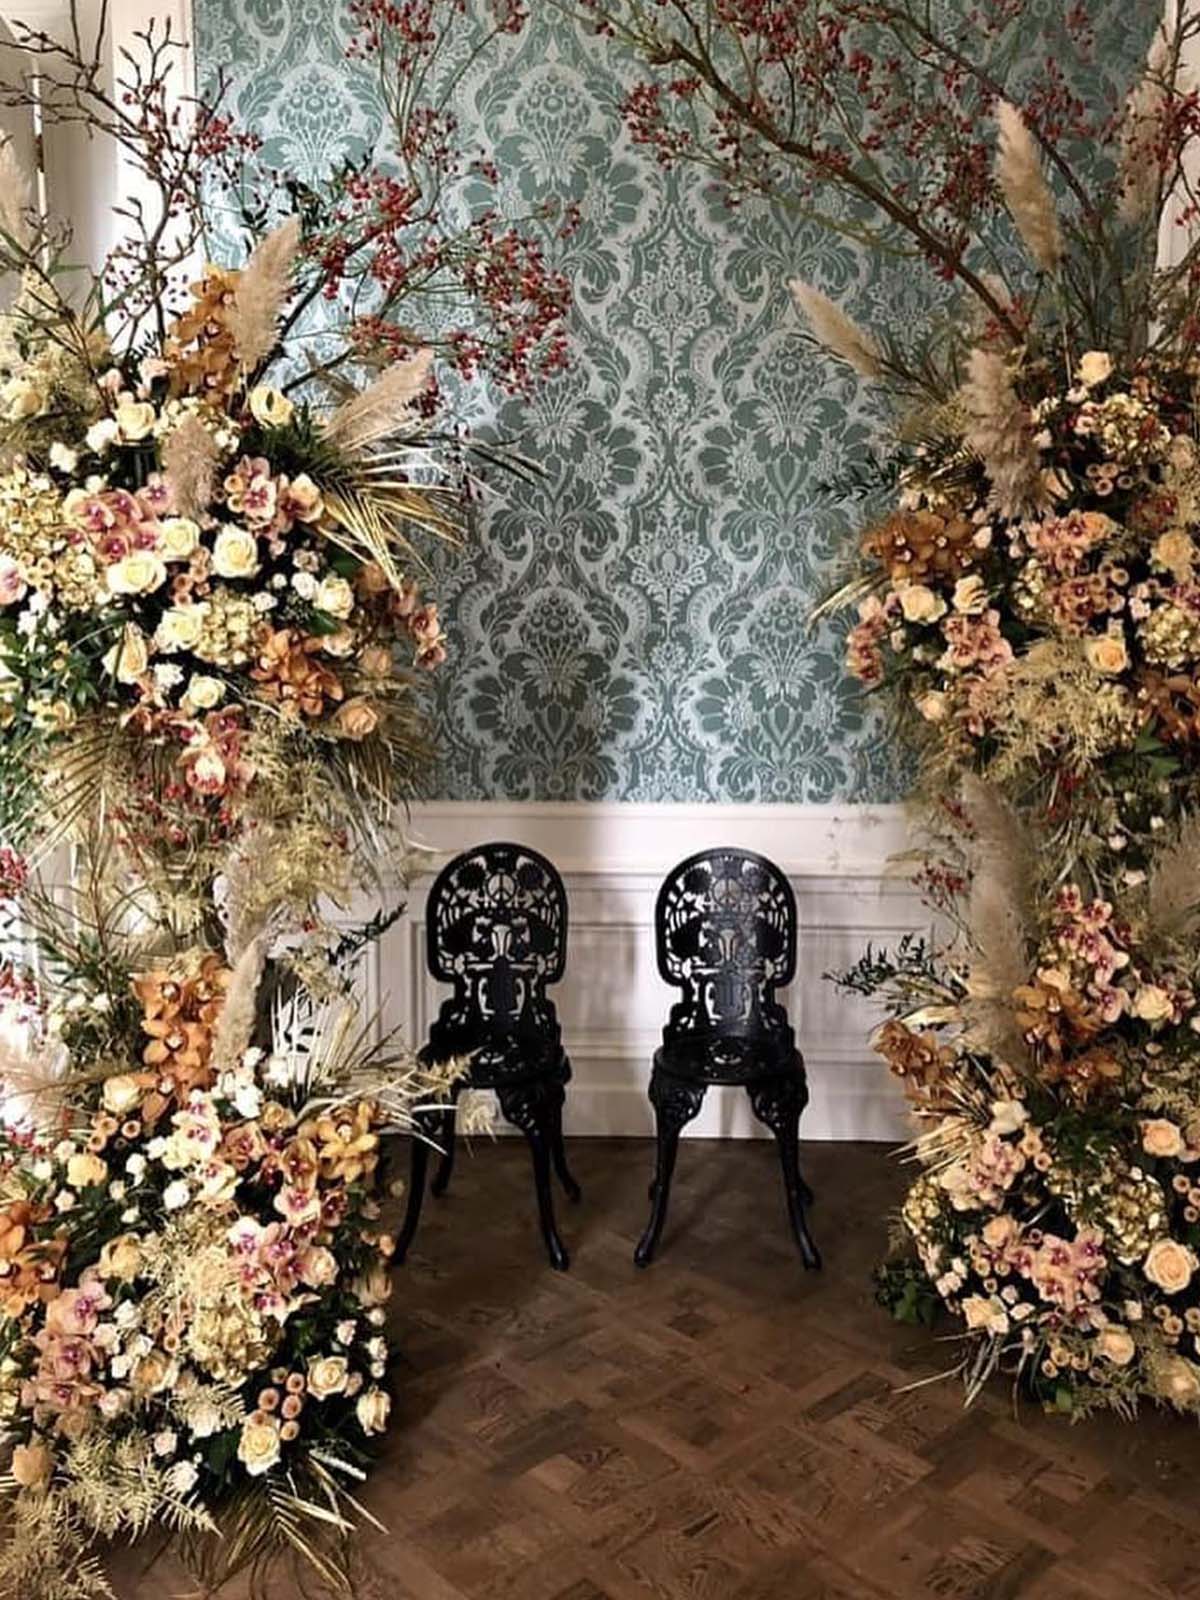 Avalanche Roses on Instagram lmflowerfashion on Thursd